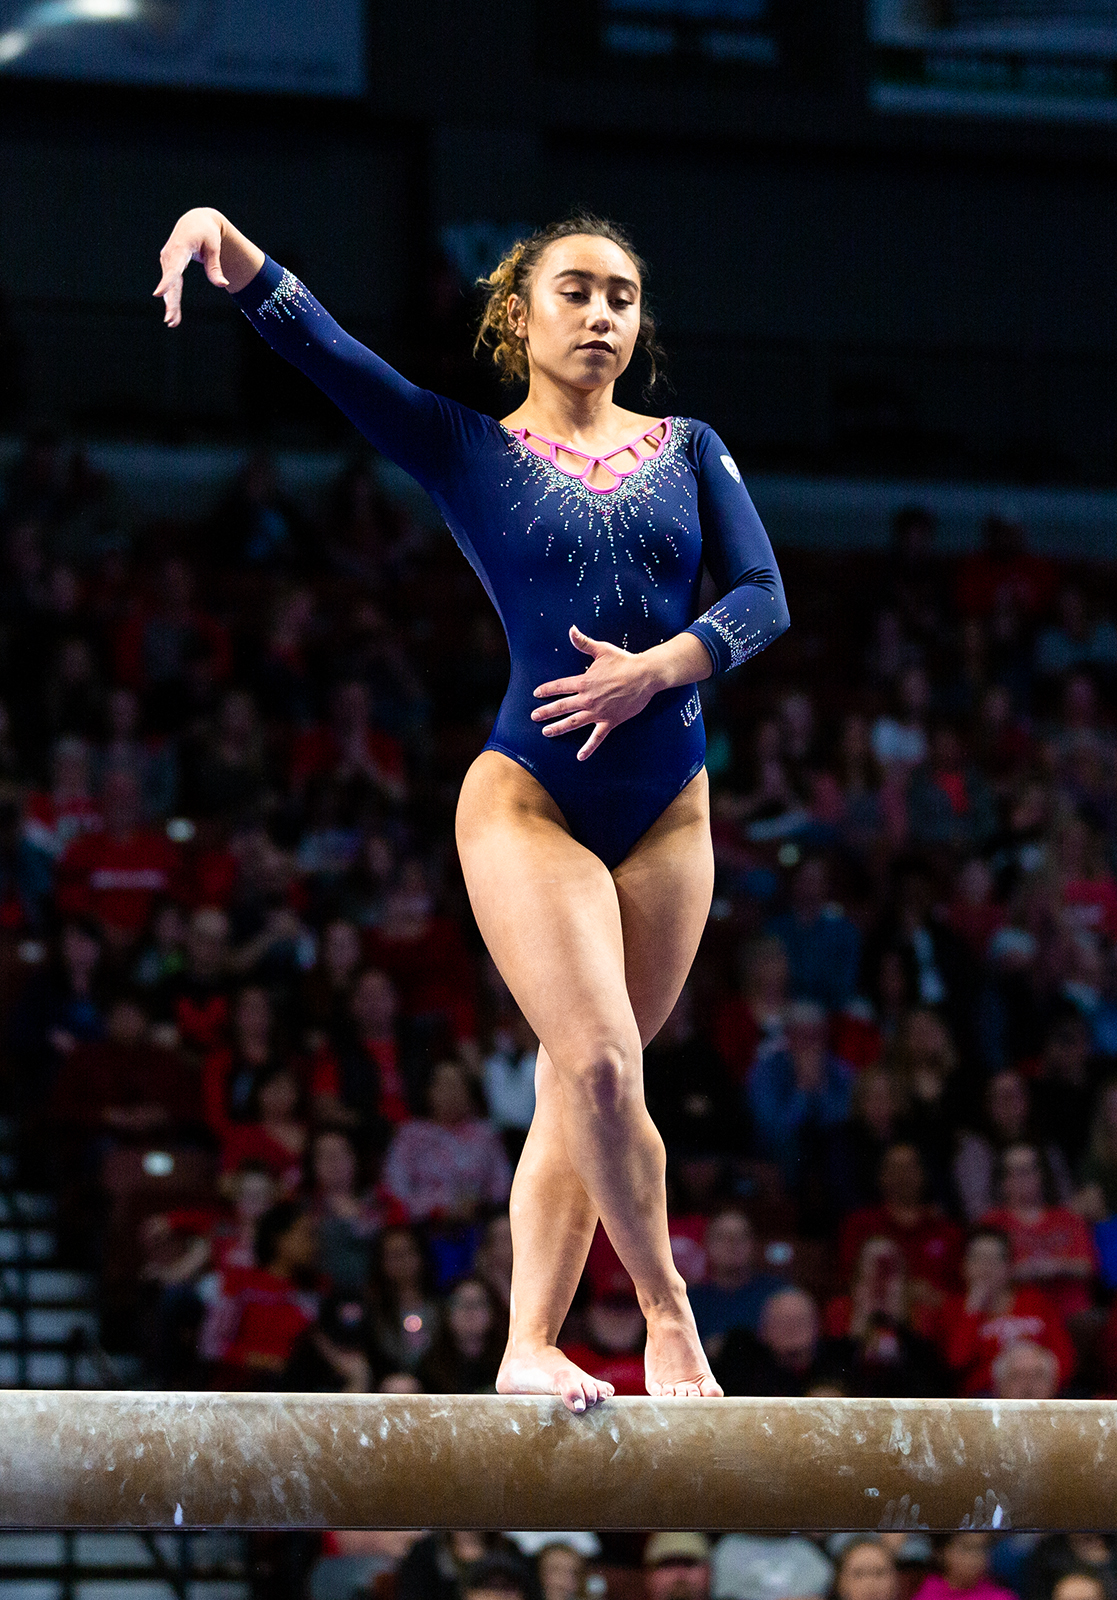 UCLA celebrates at the ESPYS with gymnast Katelyn Ohashi taking home 2